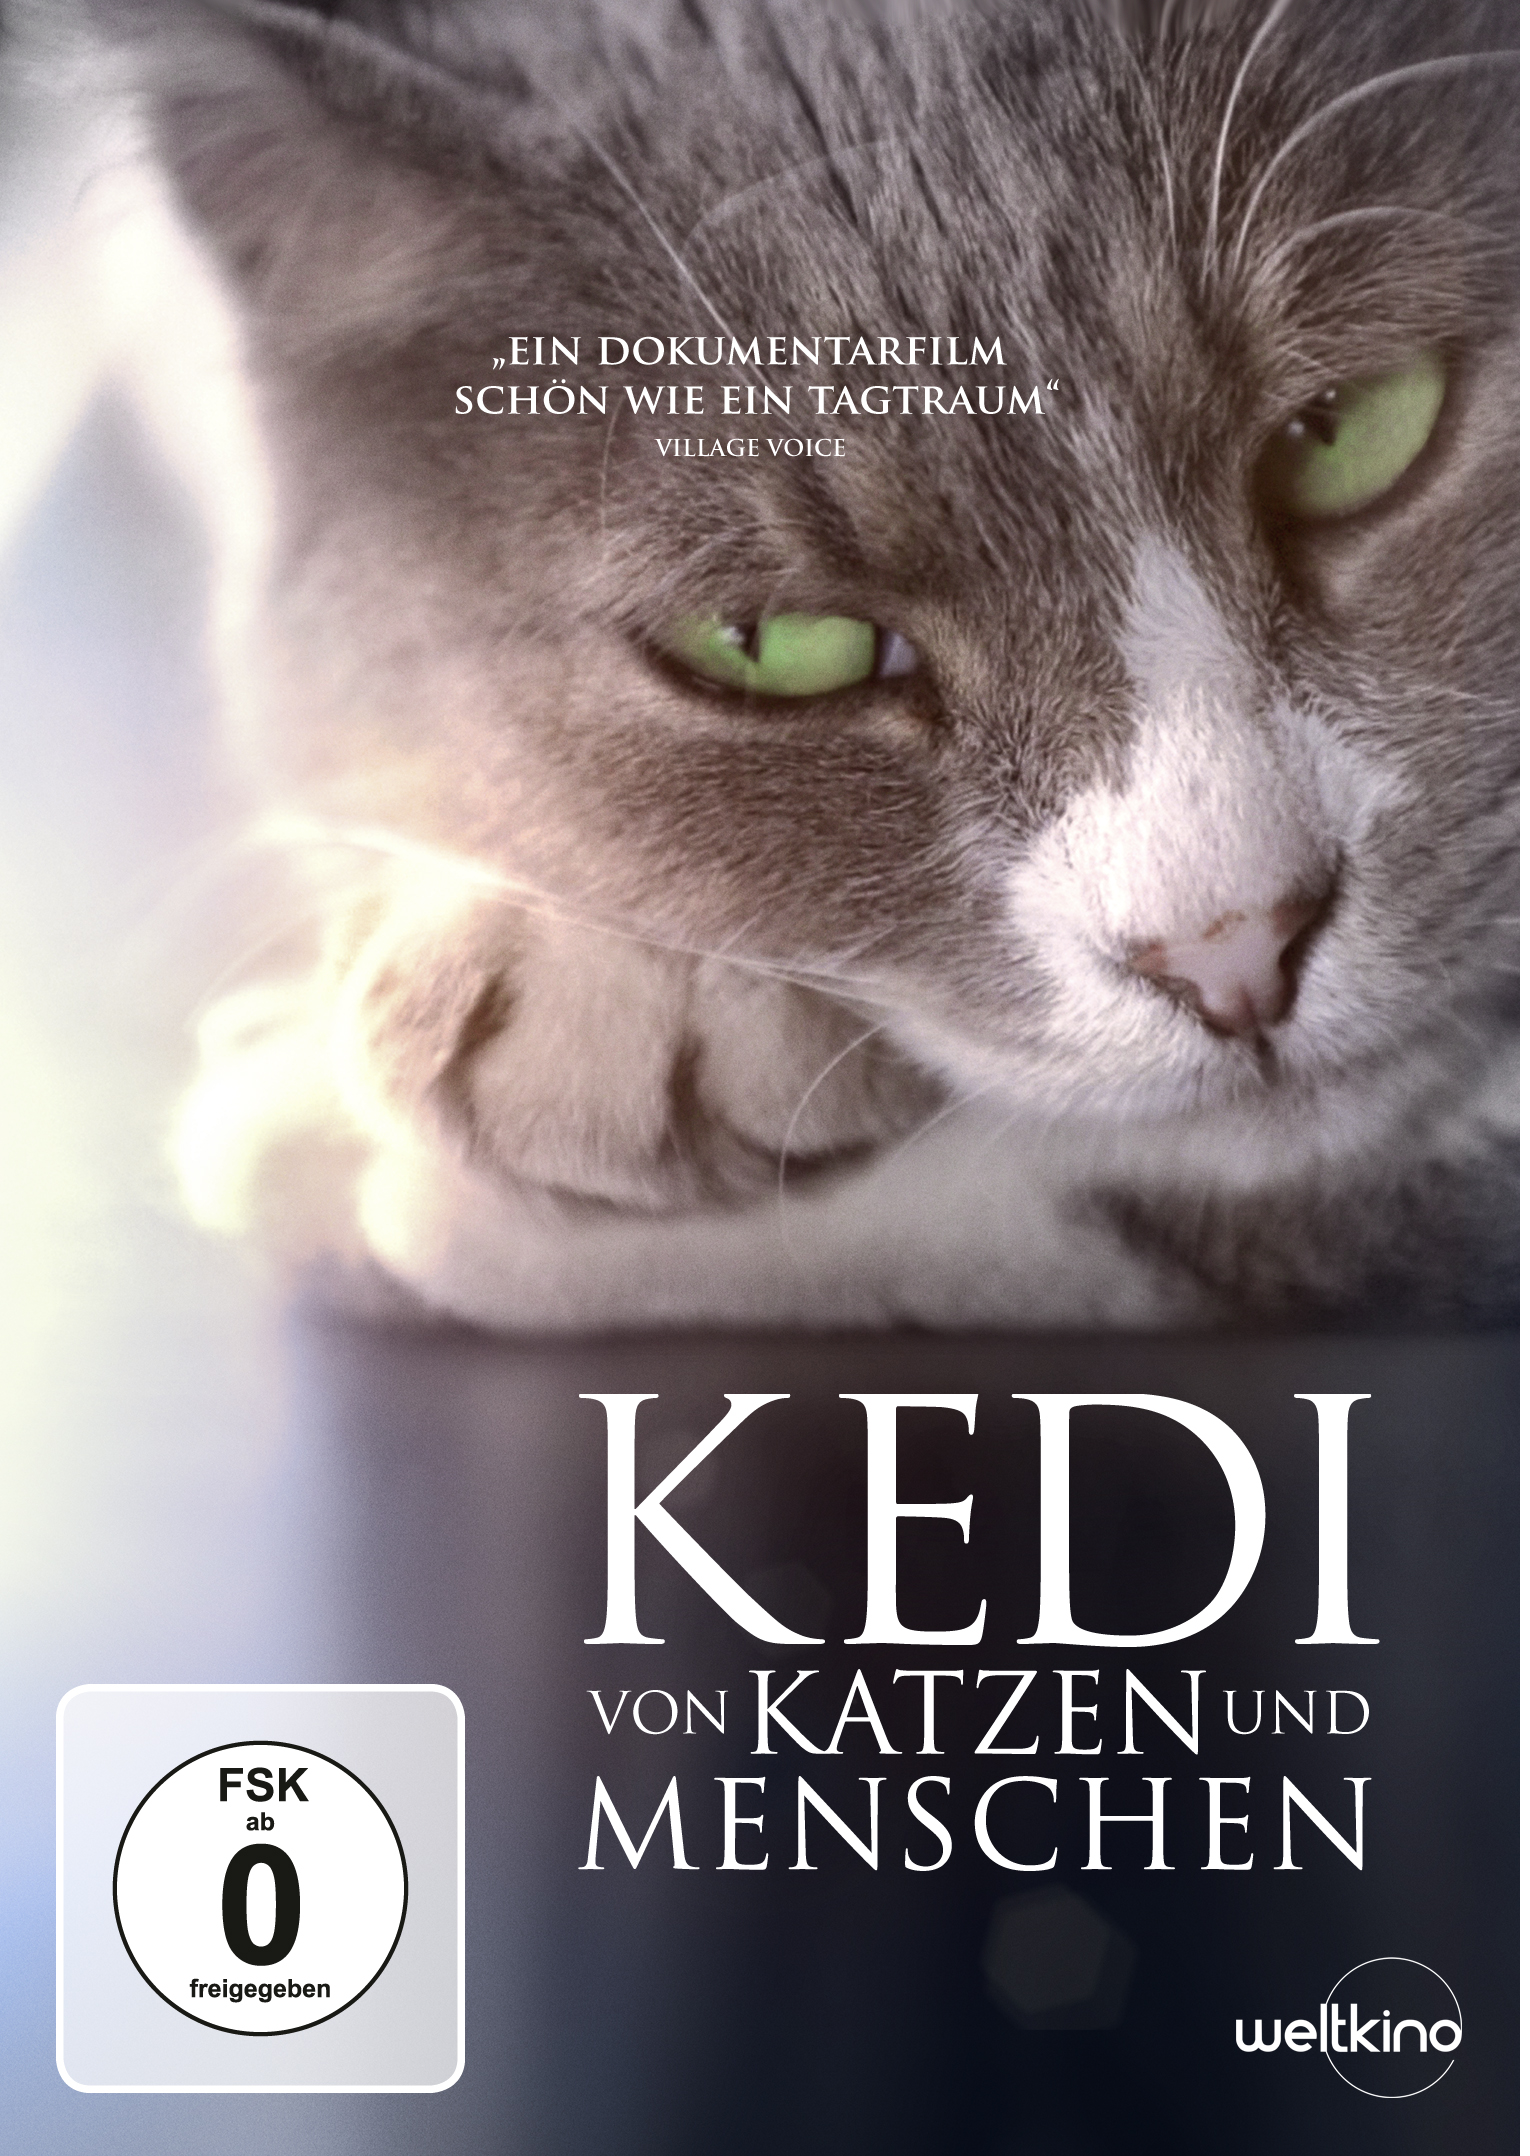 Kedi - Von Katzen Menschen und DVD